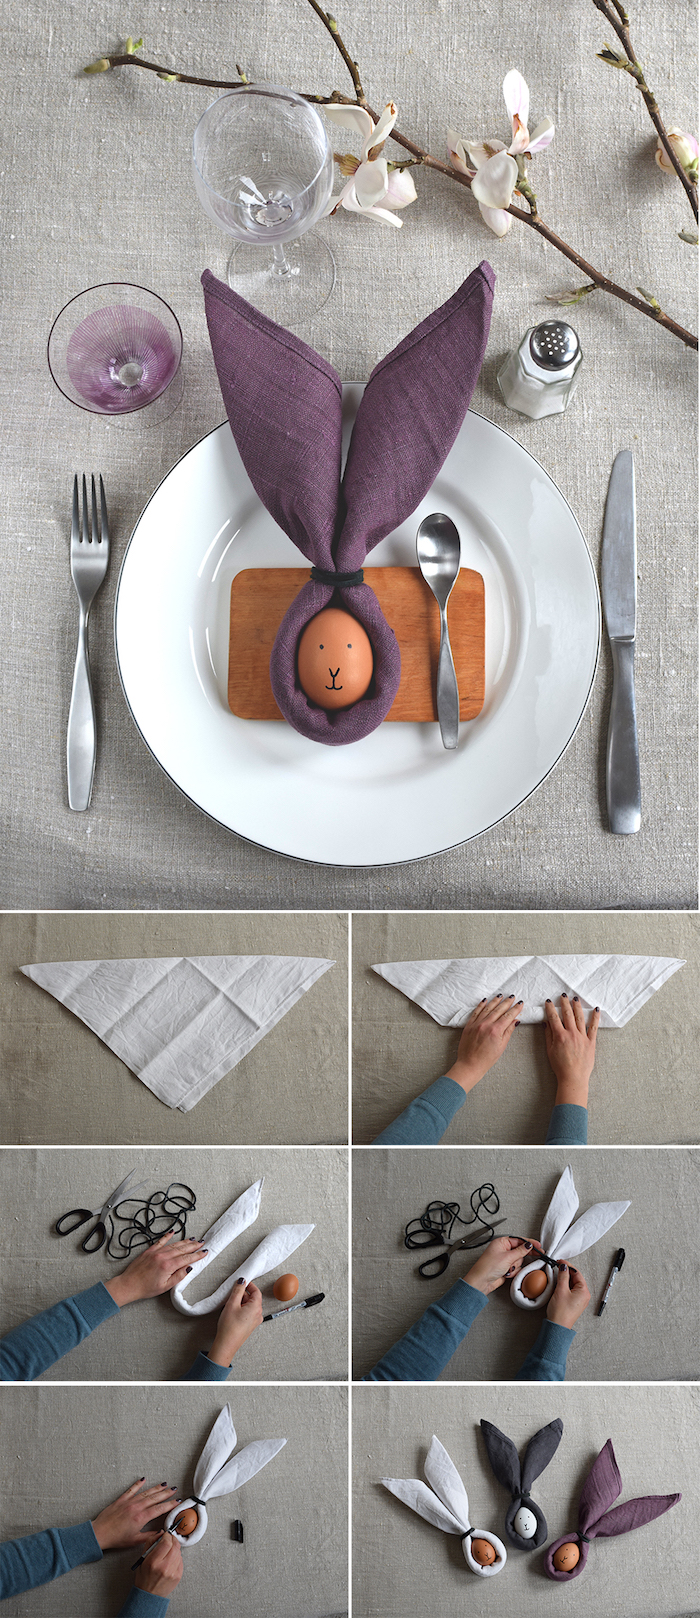 activité manuelle pour une déco de pâques, arrangement de table élégant en gris et violet, couverts de table